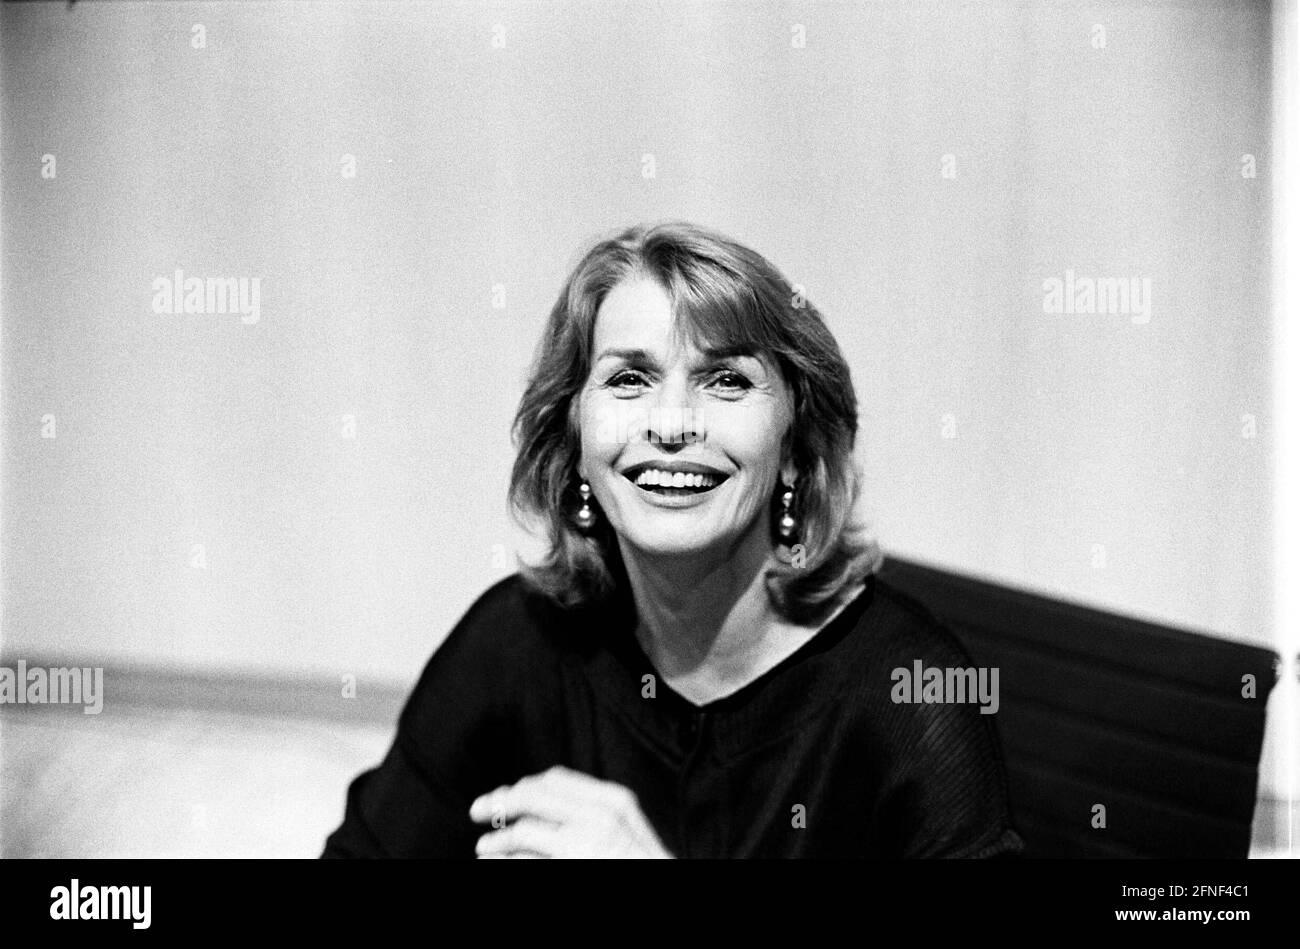 Senta Berger (geboren 1941), österreichische Schauspielerin. Das Bild wurde während einer Lesung im Harenberg City Center, Dortmund, aufgenommen. [Automatisierte Übersetzung] Stockfoto